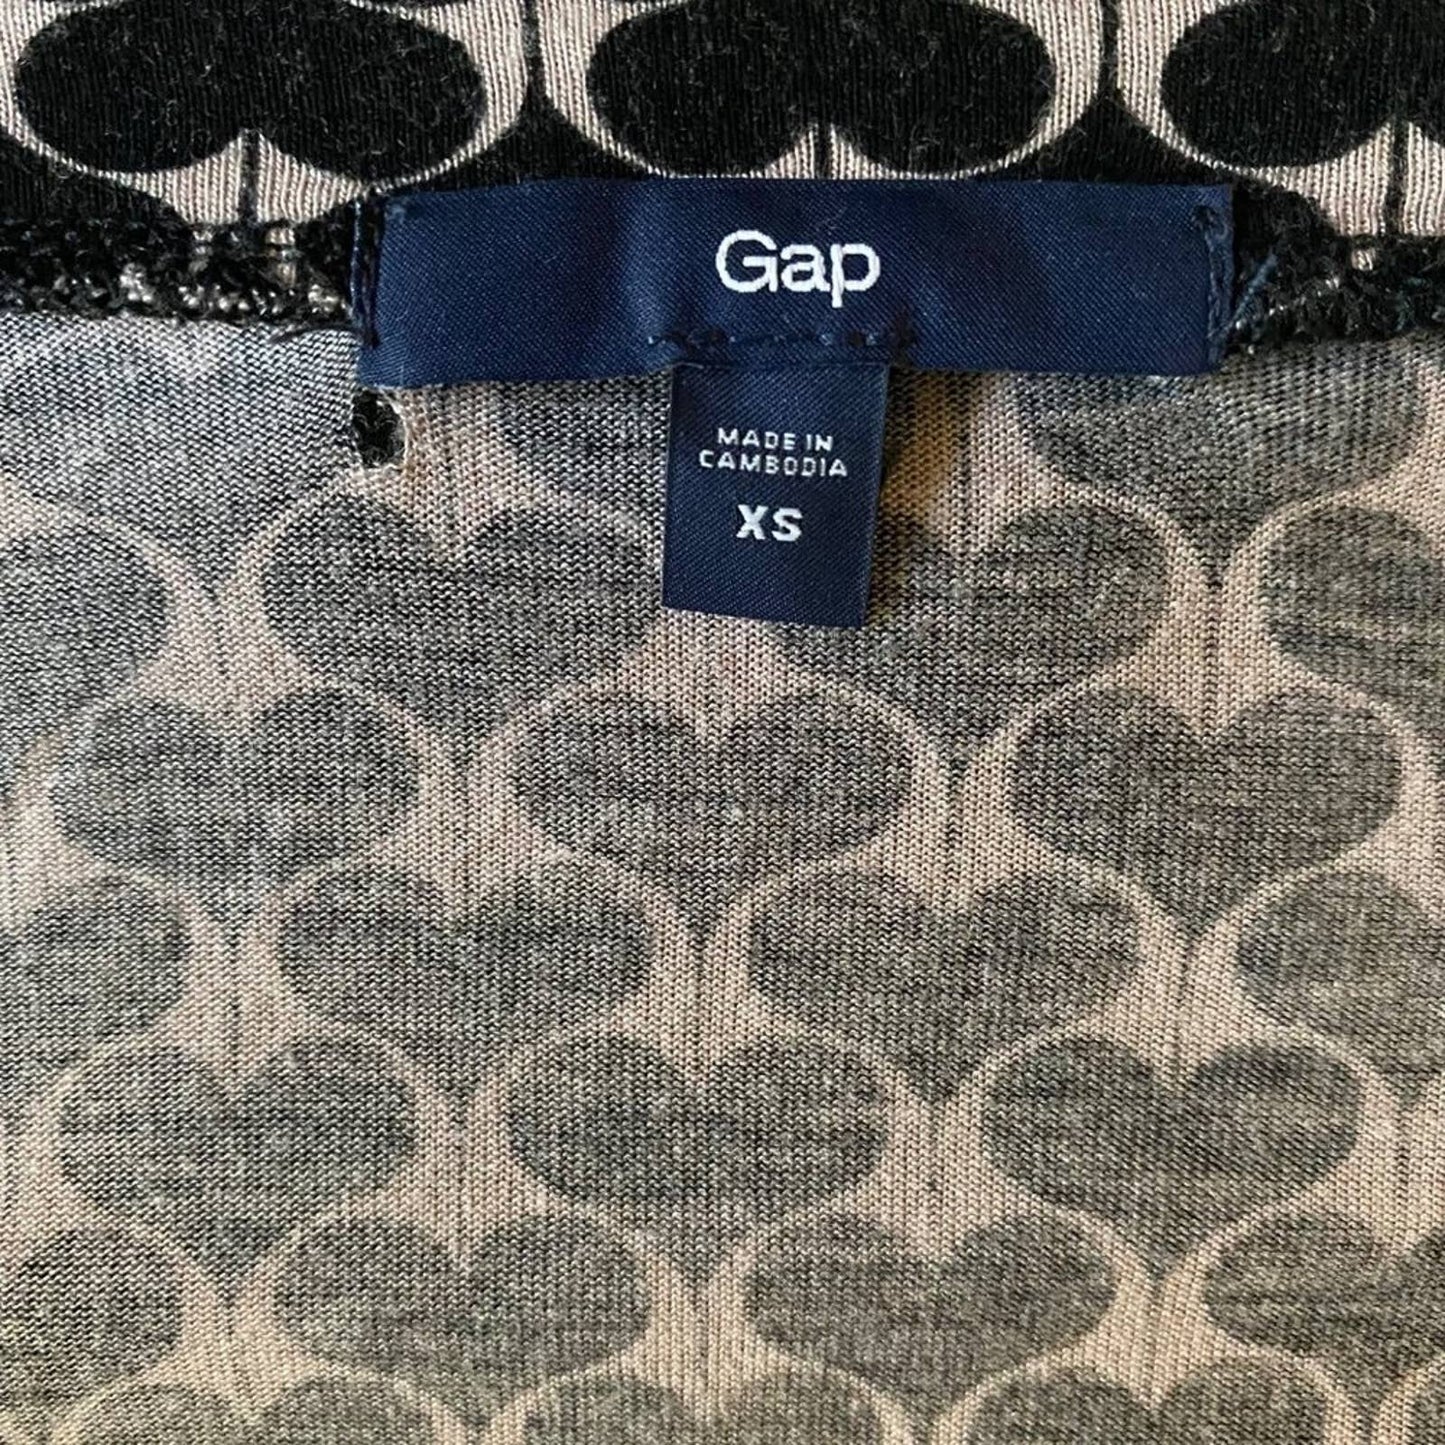 Gap sz XS Long sleeve heart print scoop neck shirt blouse